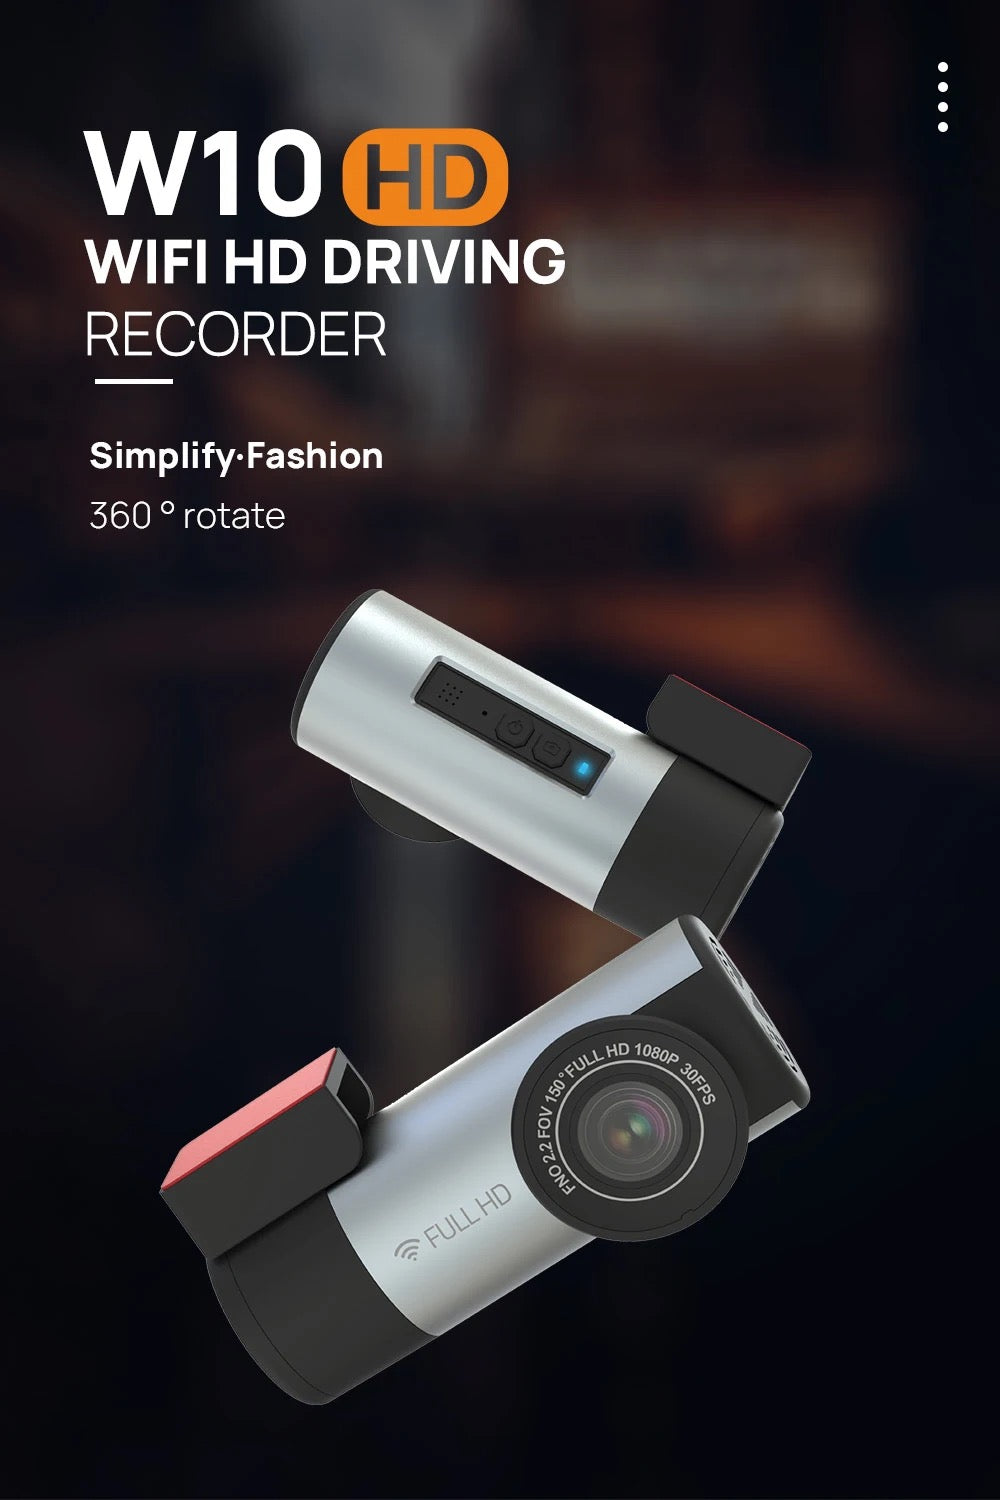 W10 HD Dashcam